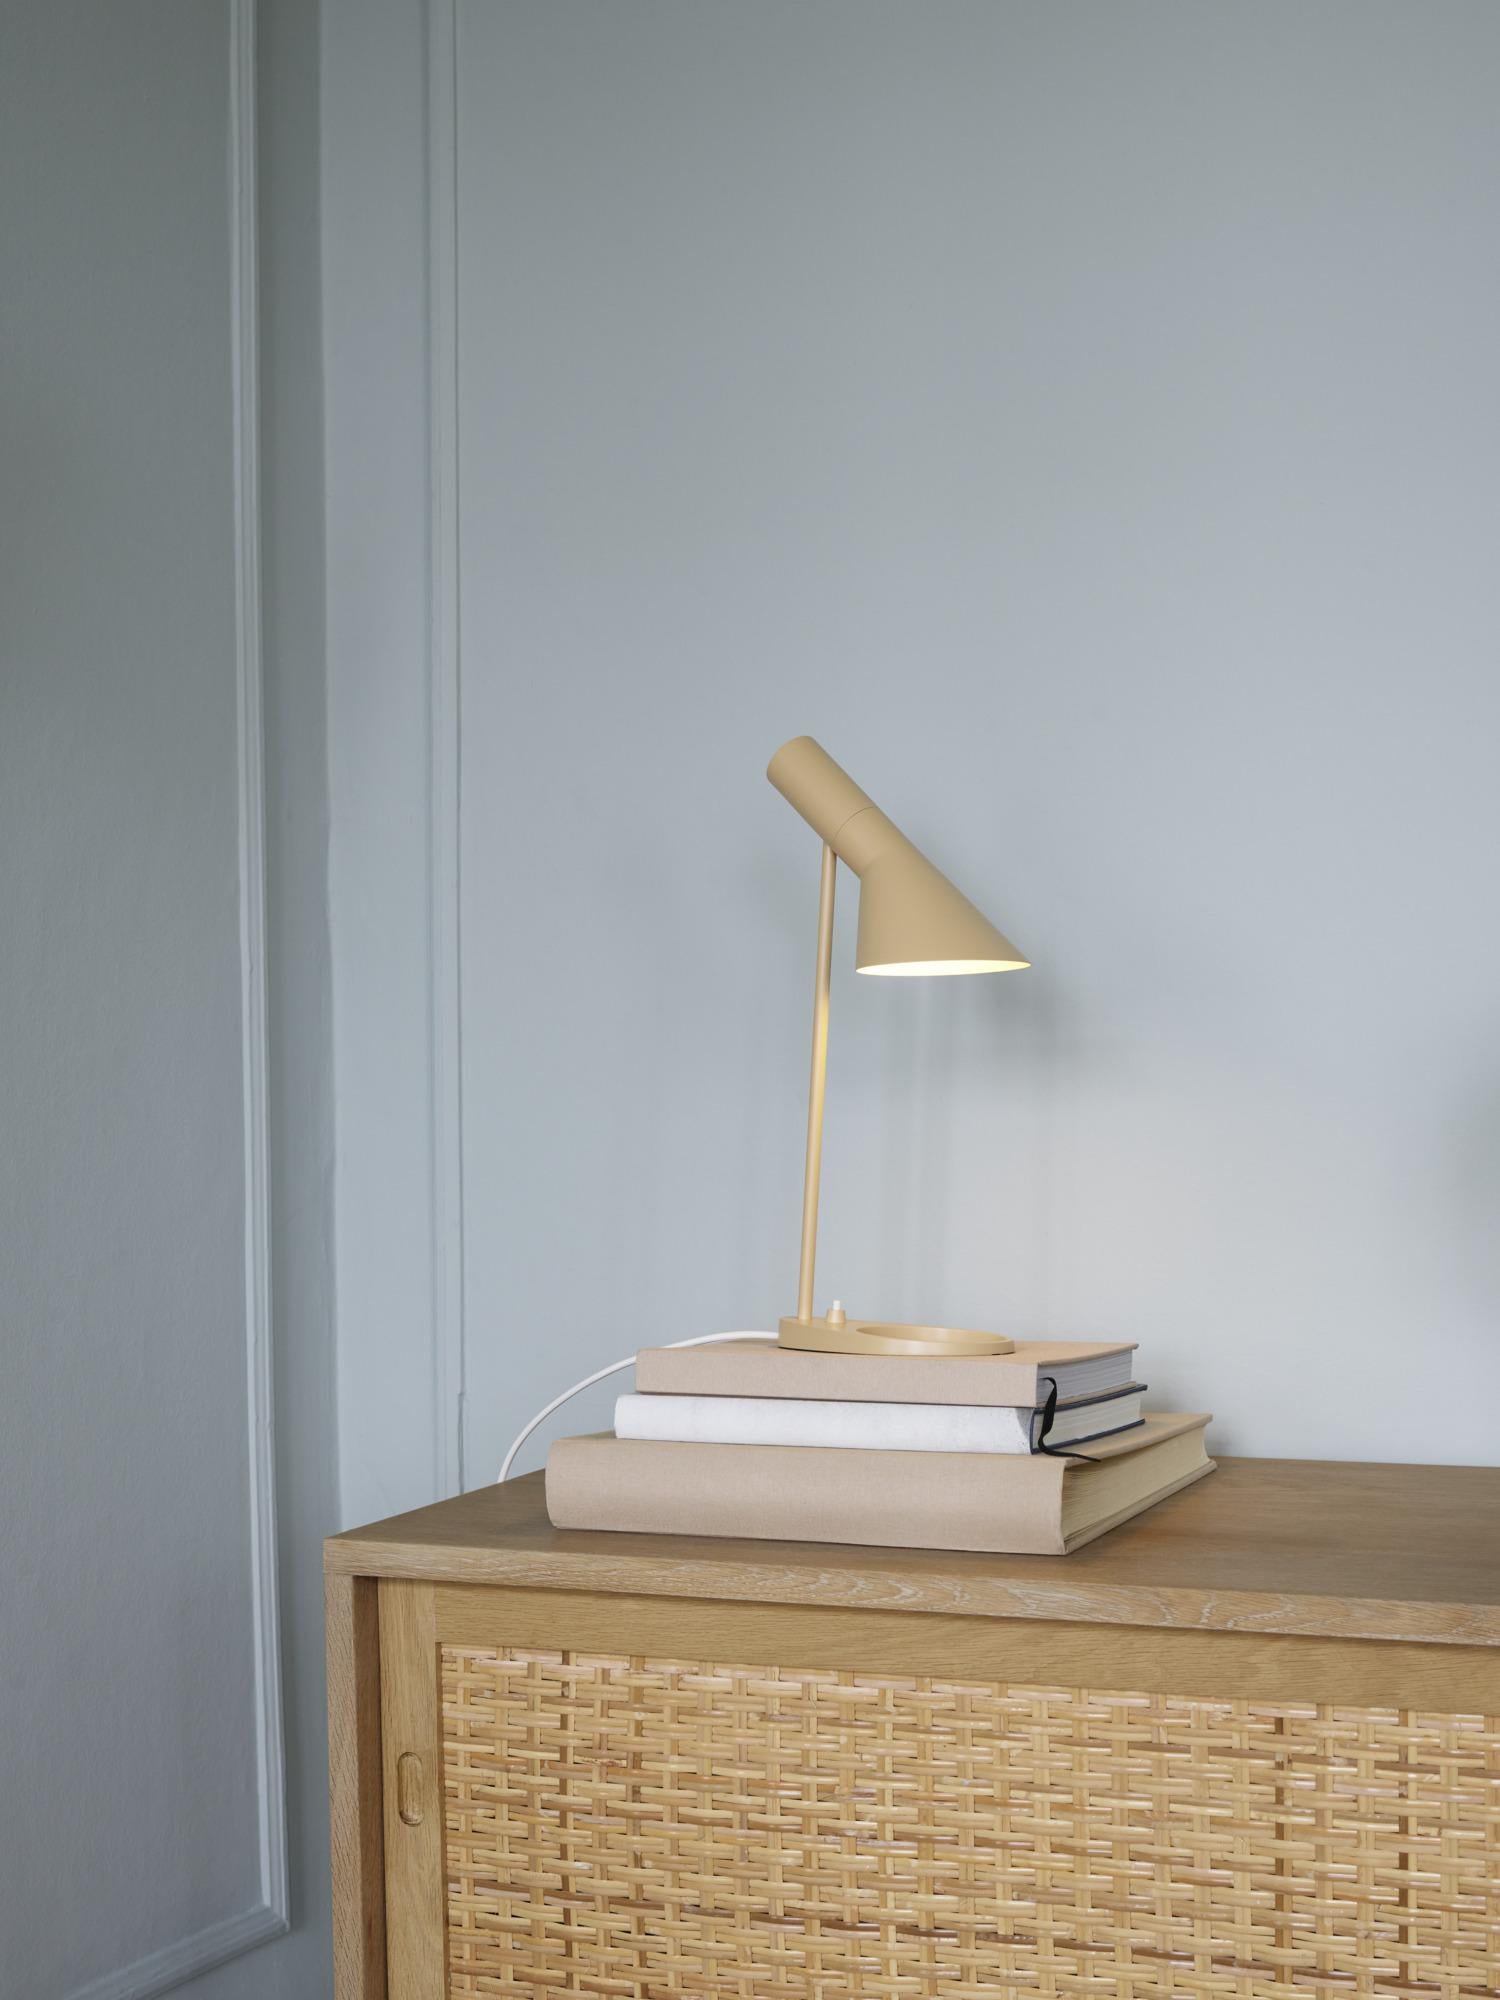 Arne Jacobsen 'AJ Mini' Table Lamp in Soft Lemon for Louis Poulsen For Sale 3